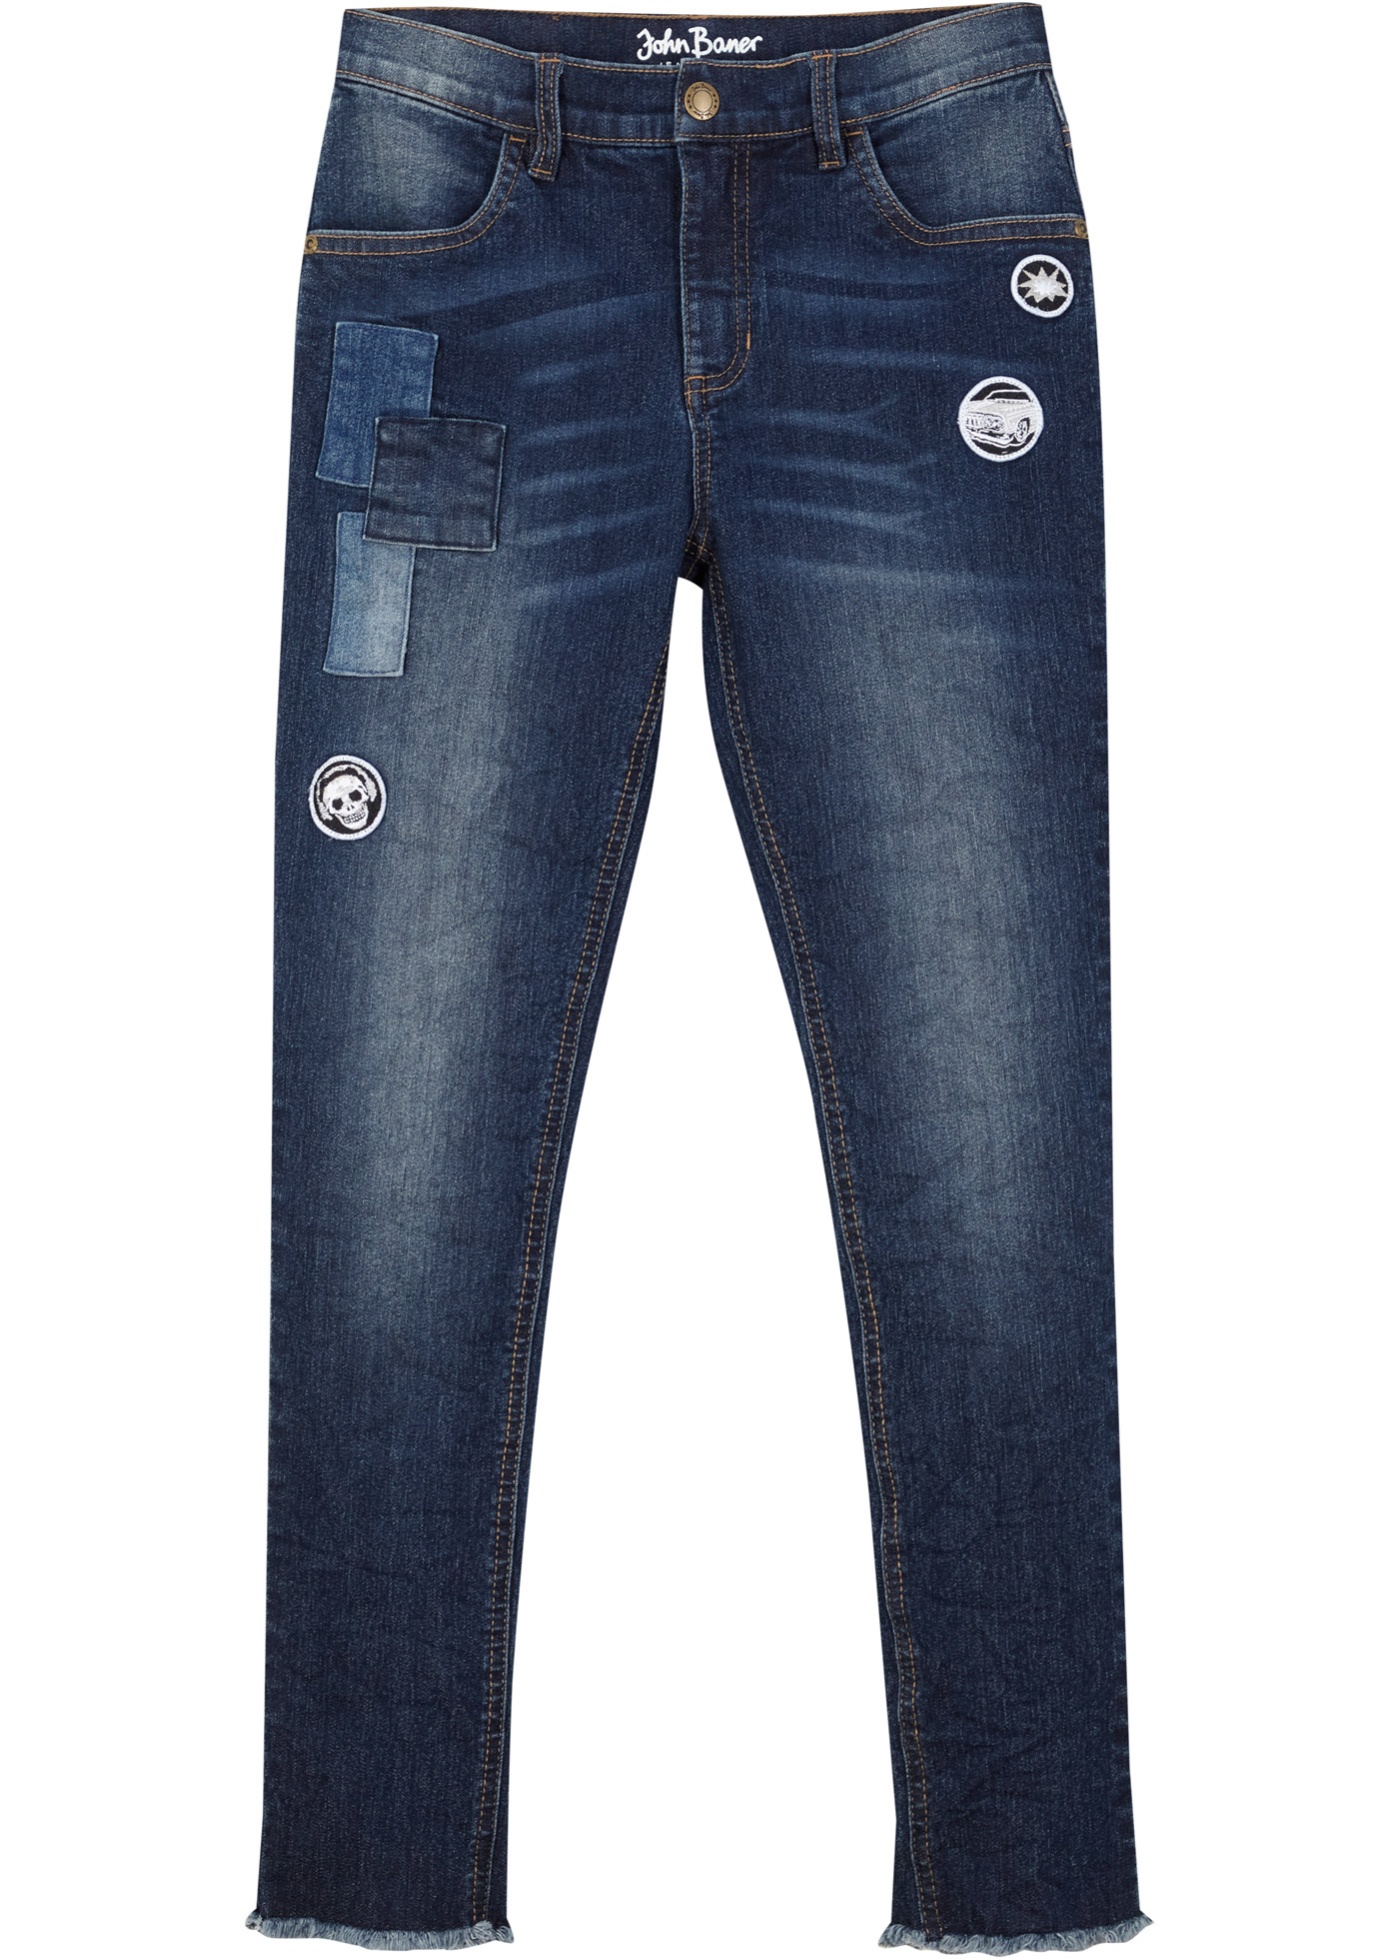 Jungen Jeans mit Patch Details, ankle-length